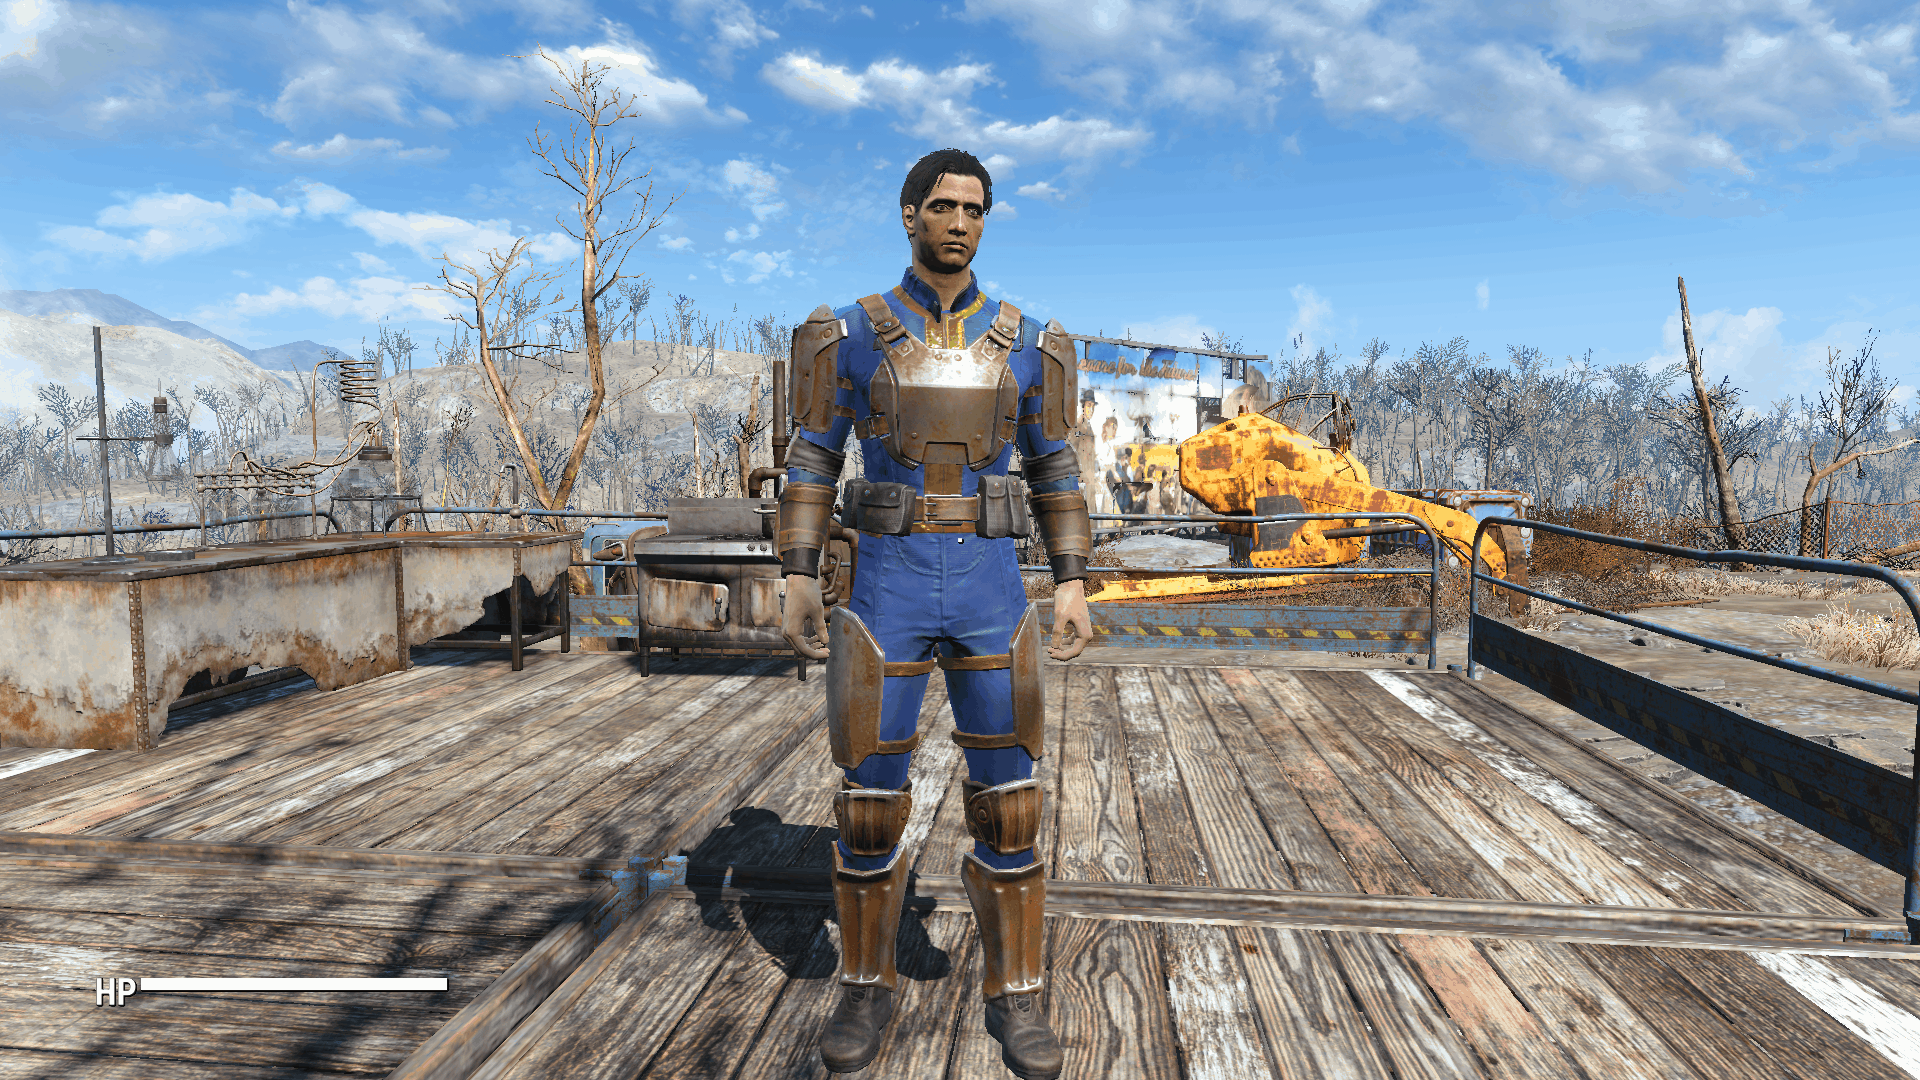 Vault 111 Combat Suit Standalone - Fallout 4 Mod Download